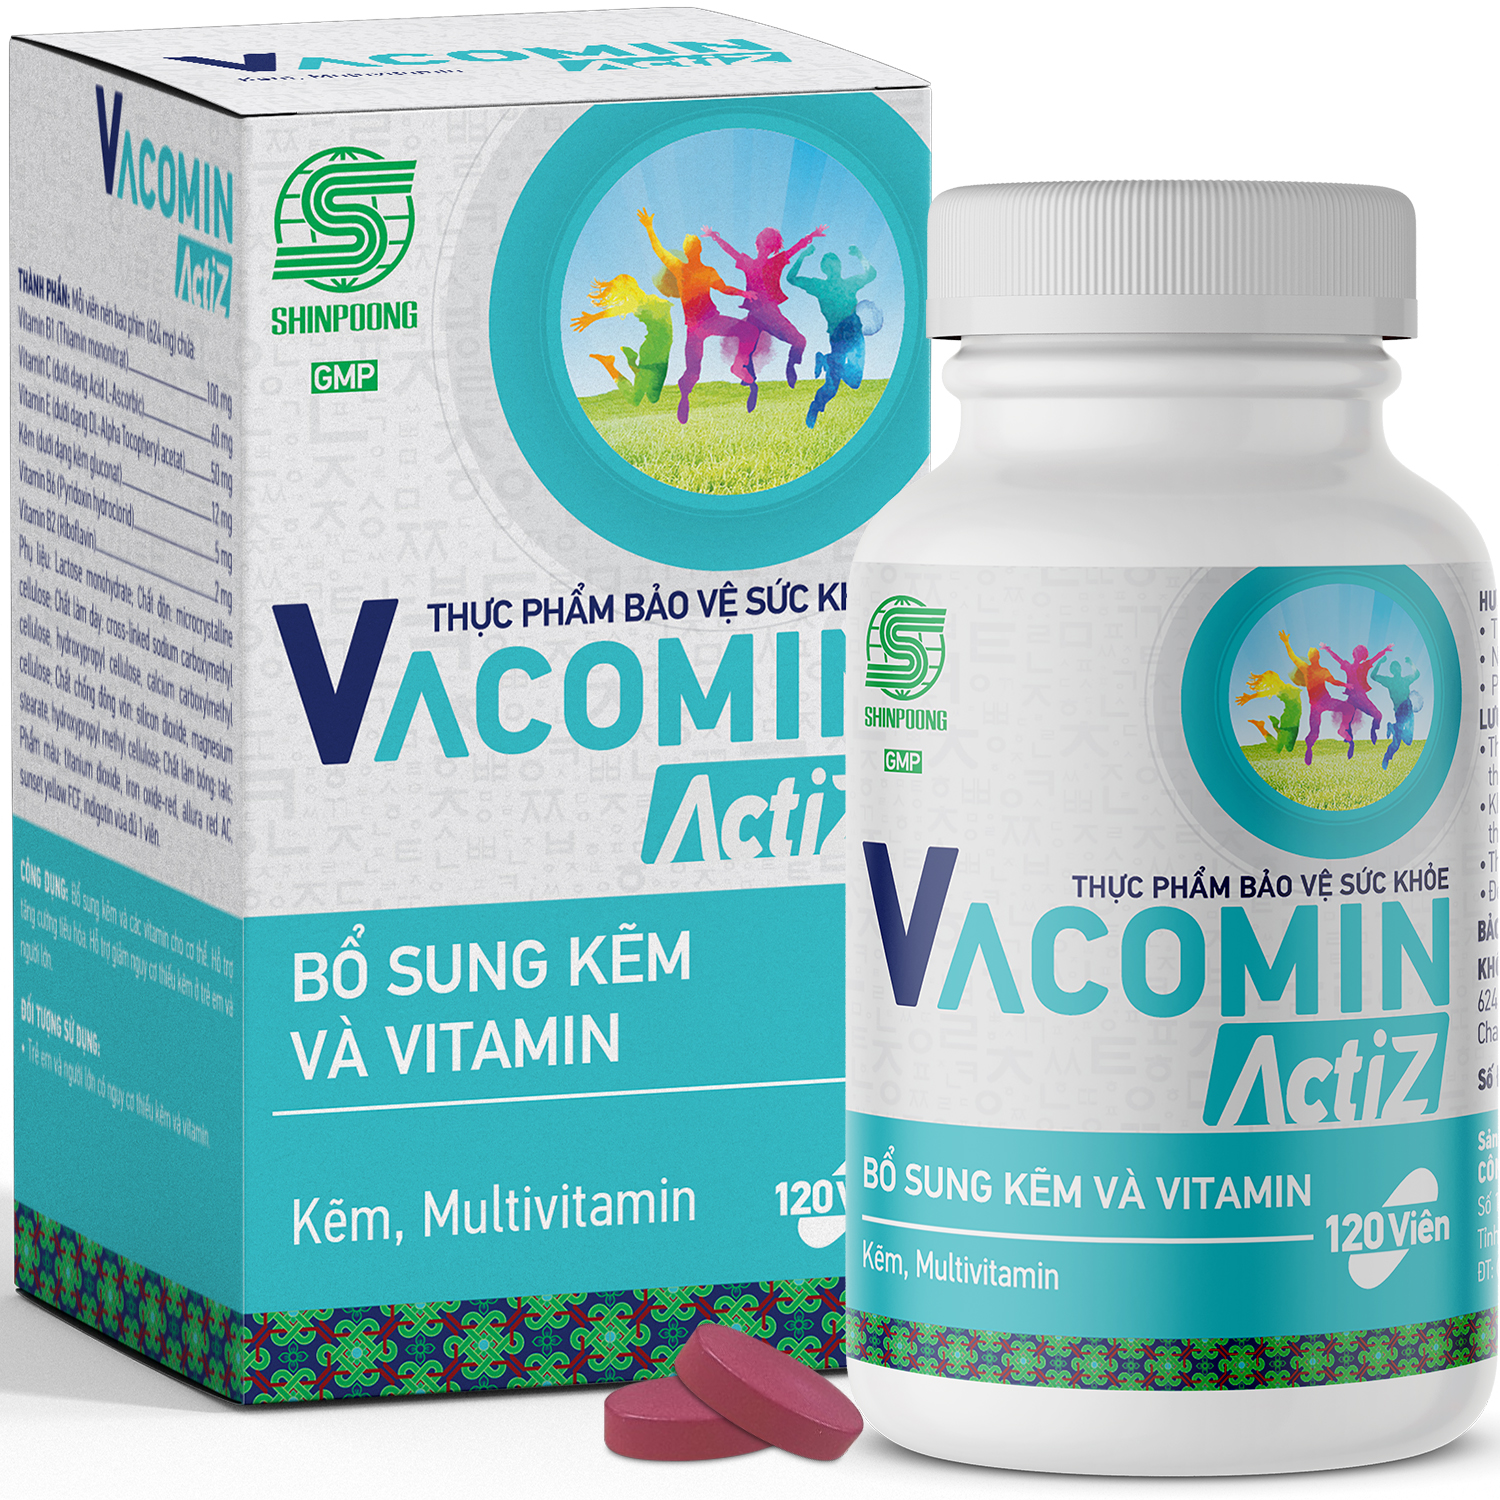 Thực Phẩm Bảo Vệ Sức Khỏe bổ sung vitamin tổng hợp, vitamin nhóm B, E, C và Kẽm hữu cơ Shinpoong Vacomin ActiZ - Hộp 120 viên